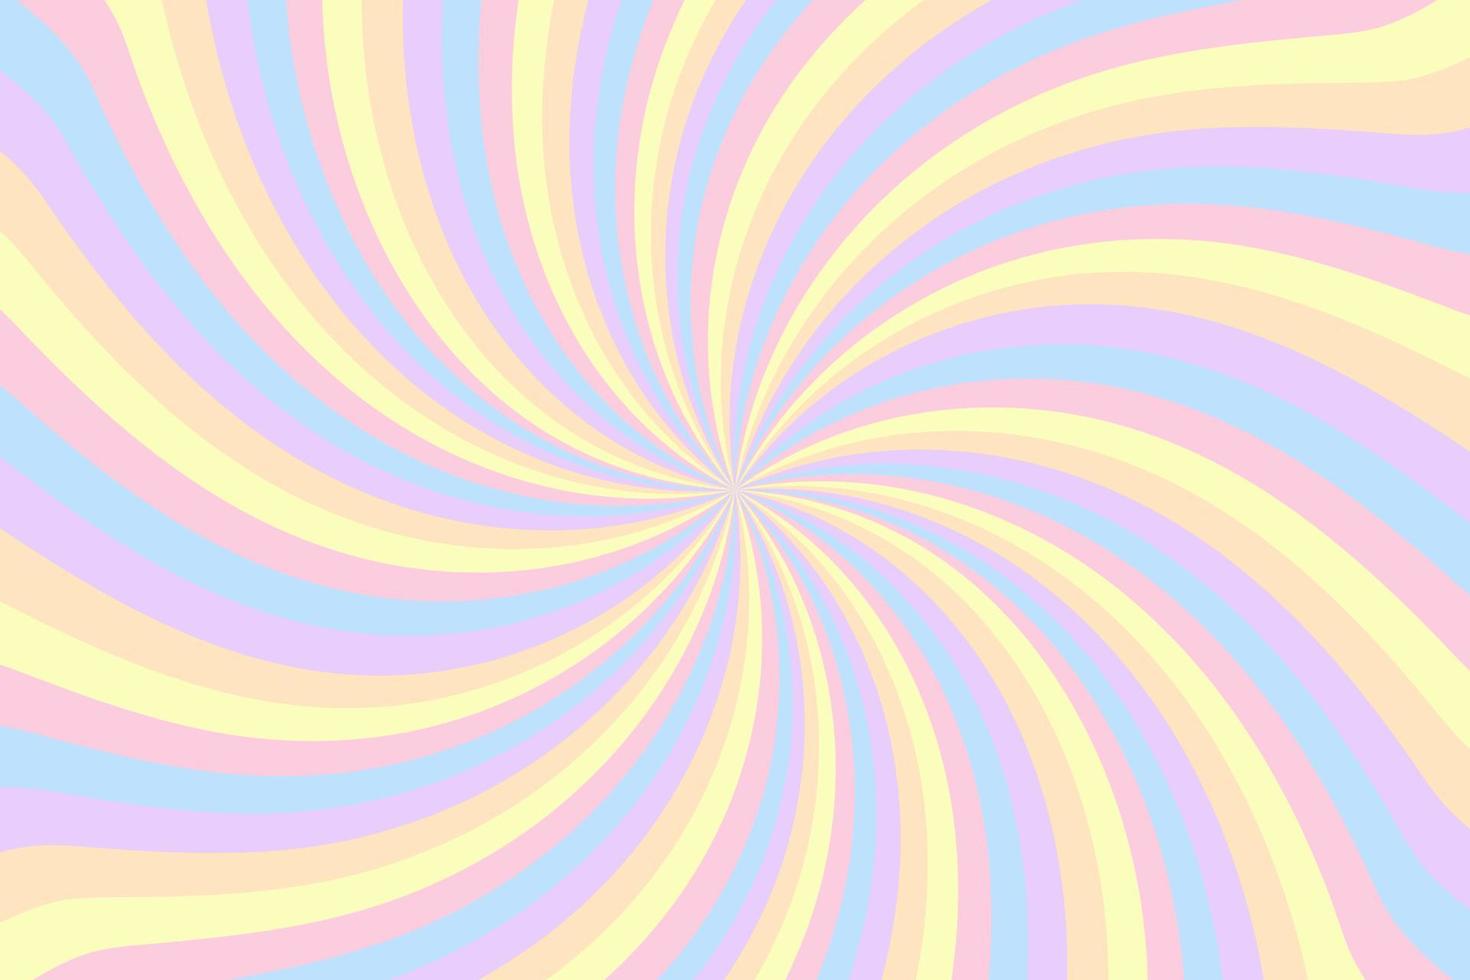 fond de tourbillon arc-en-ciel avec des étoiles. arc-en-ciel dégradé radial de spirale torsadée. illustration vectorielle pastel rayé vecteur